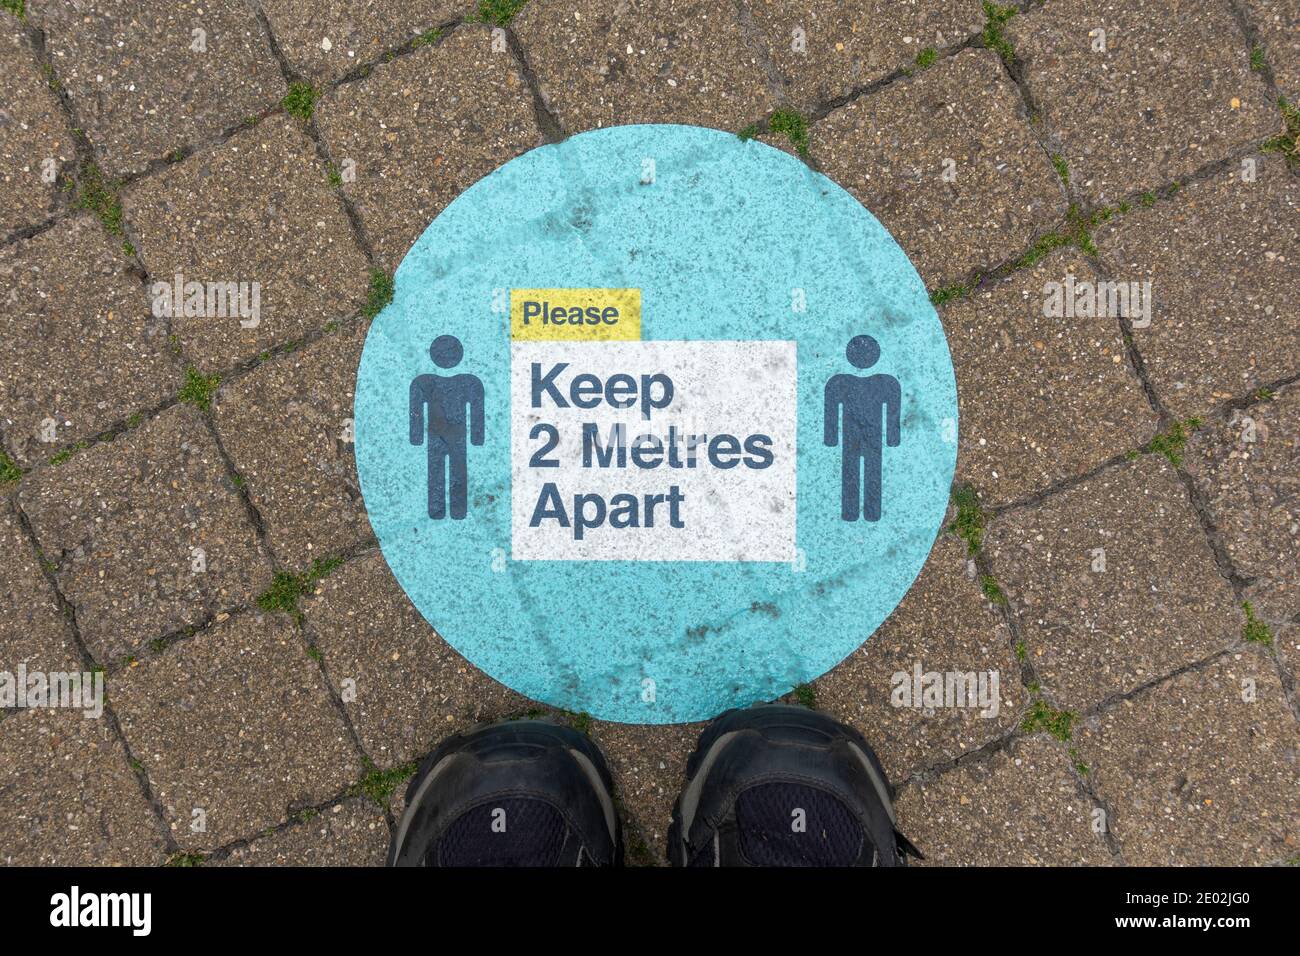 "Halten Sie 2 Meter auseinander" Zeichen auf dem Boden erinnert die Menschen an soziale Distanz während der 2020 Covid-19 Pandemie, Windsor, Berkshire, Großbritannien. Stockfoto